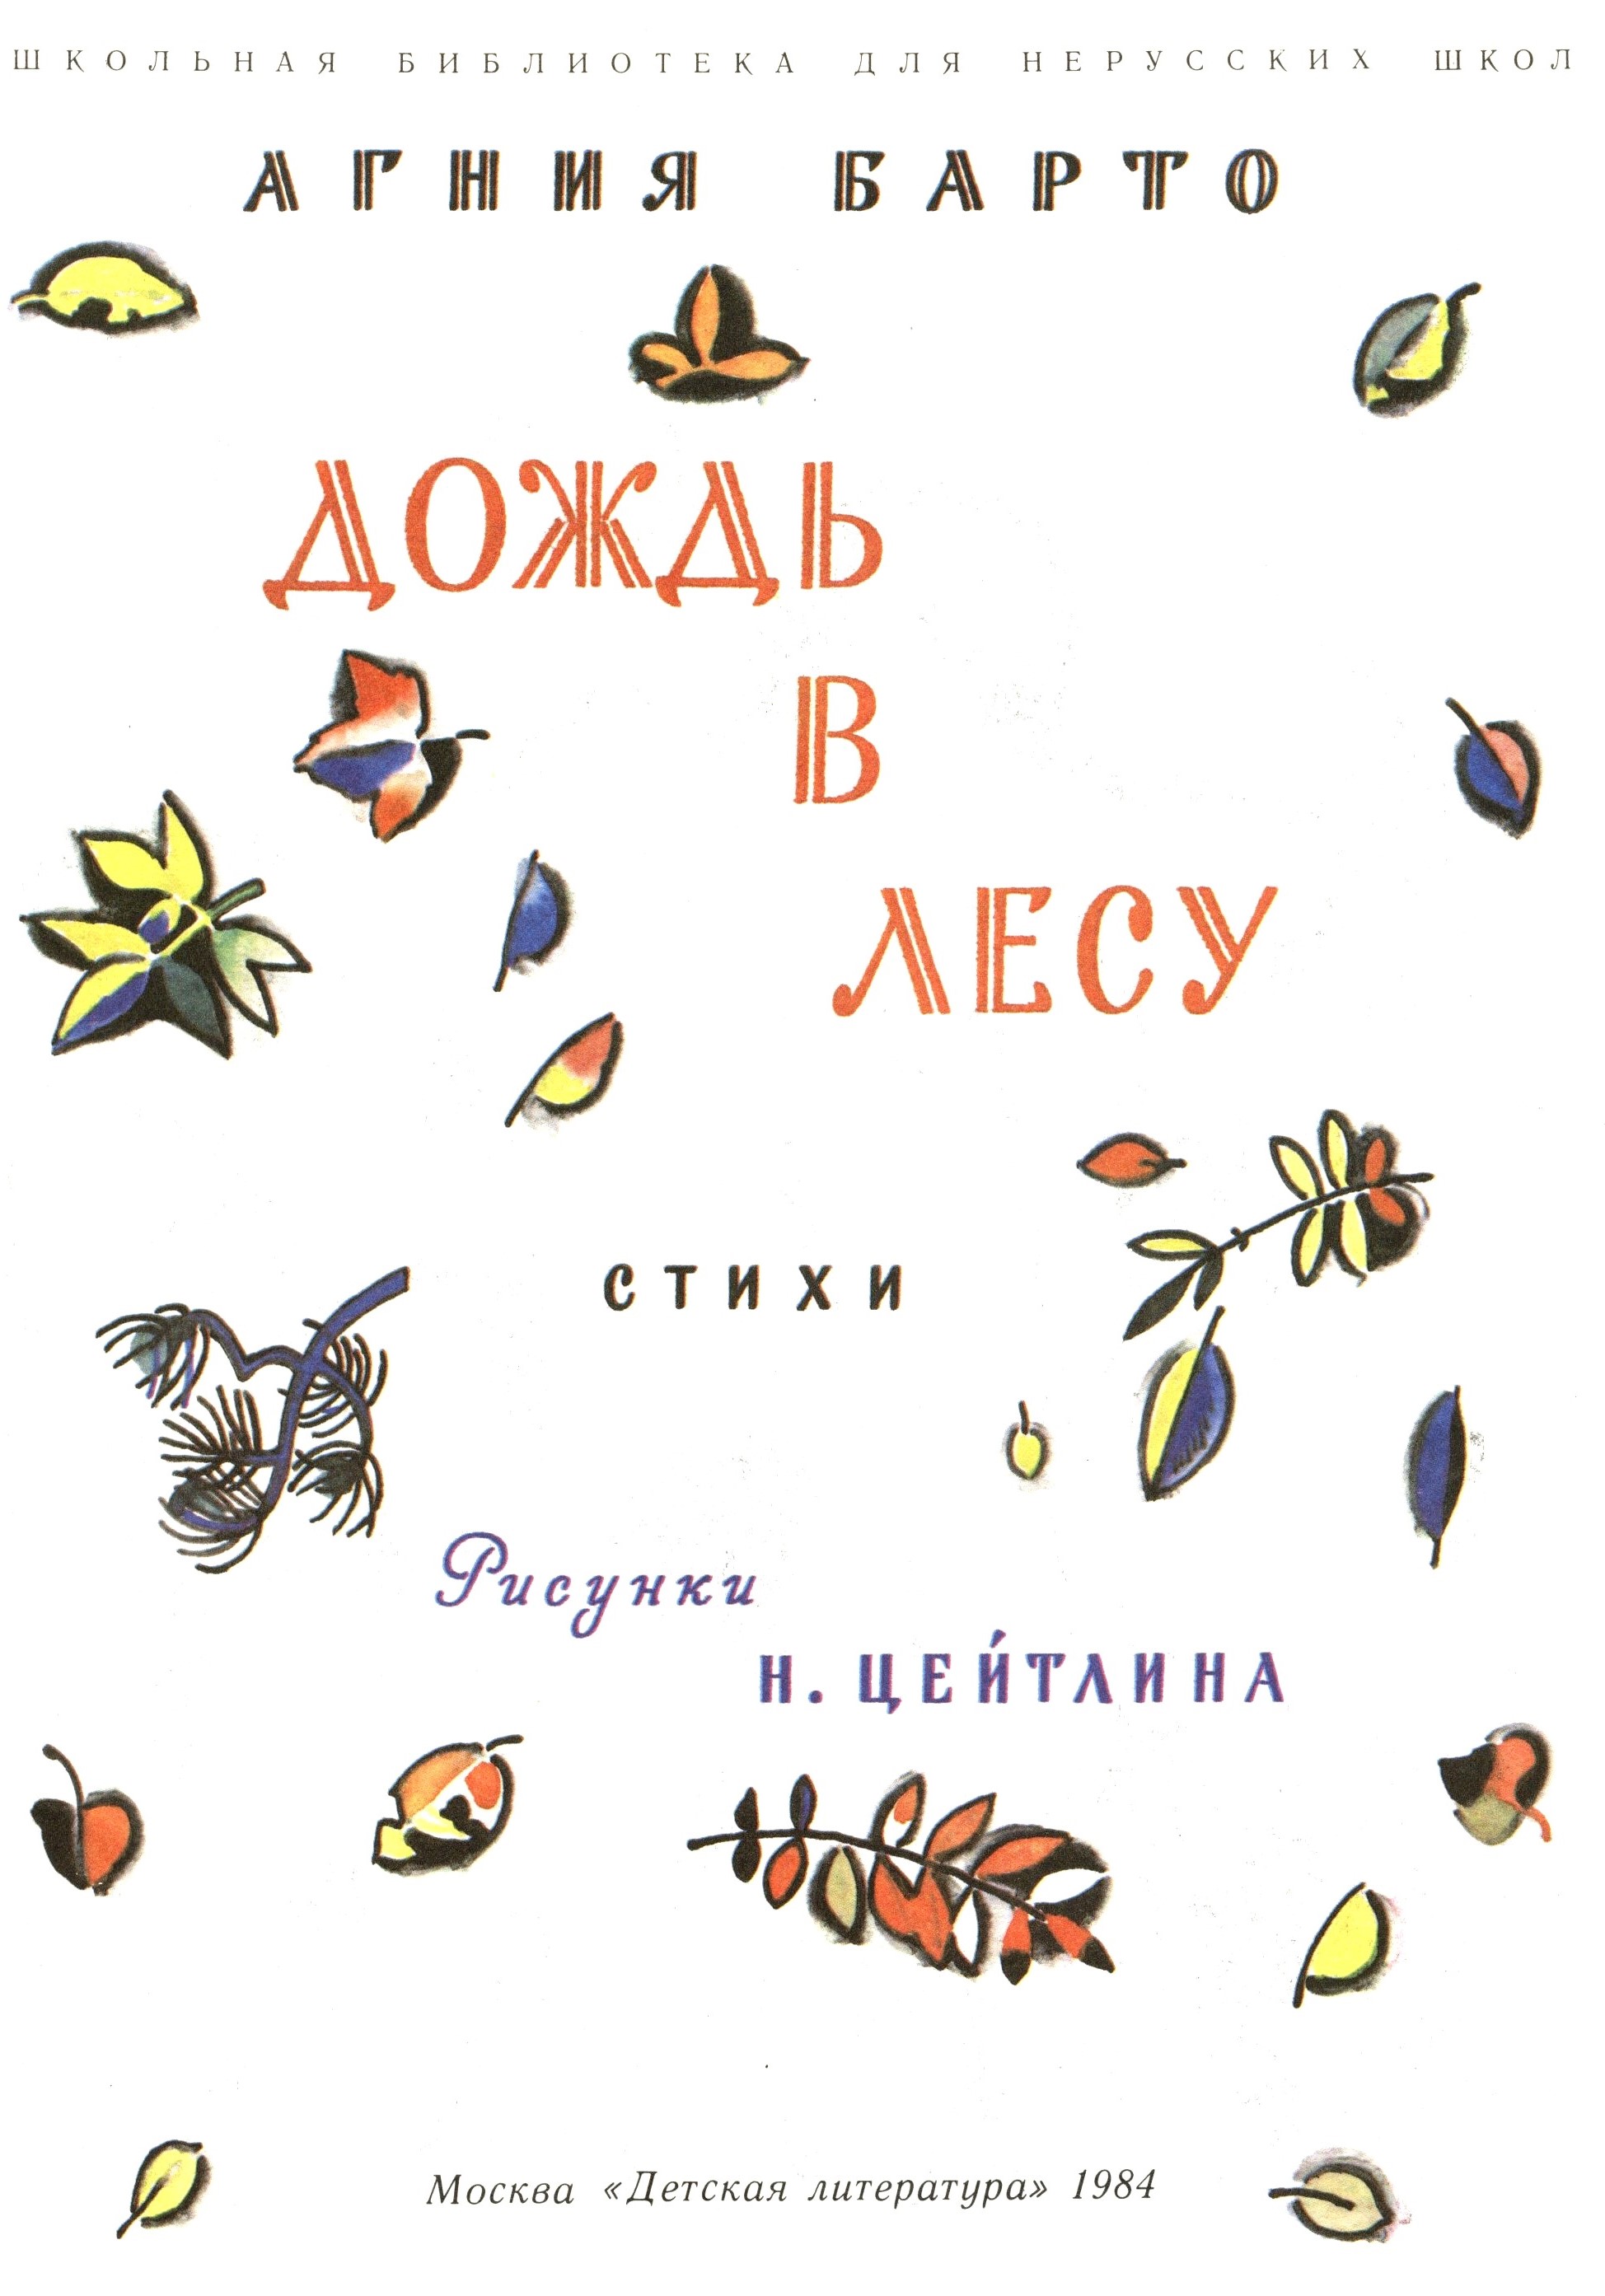 А. Барто. "Дождь в лесу". Рисунки Н. Цейтлина. Москва, "Детская литература". 1984.